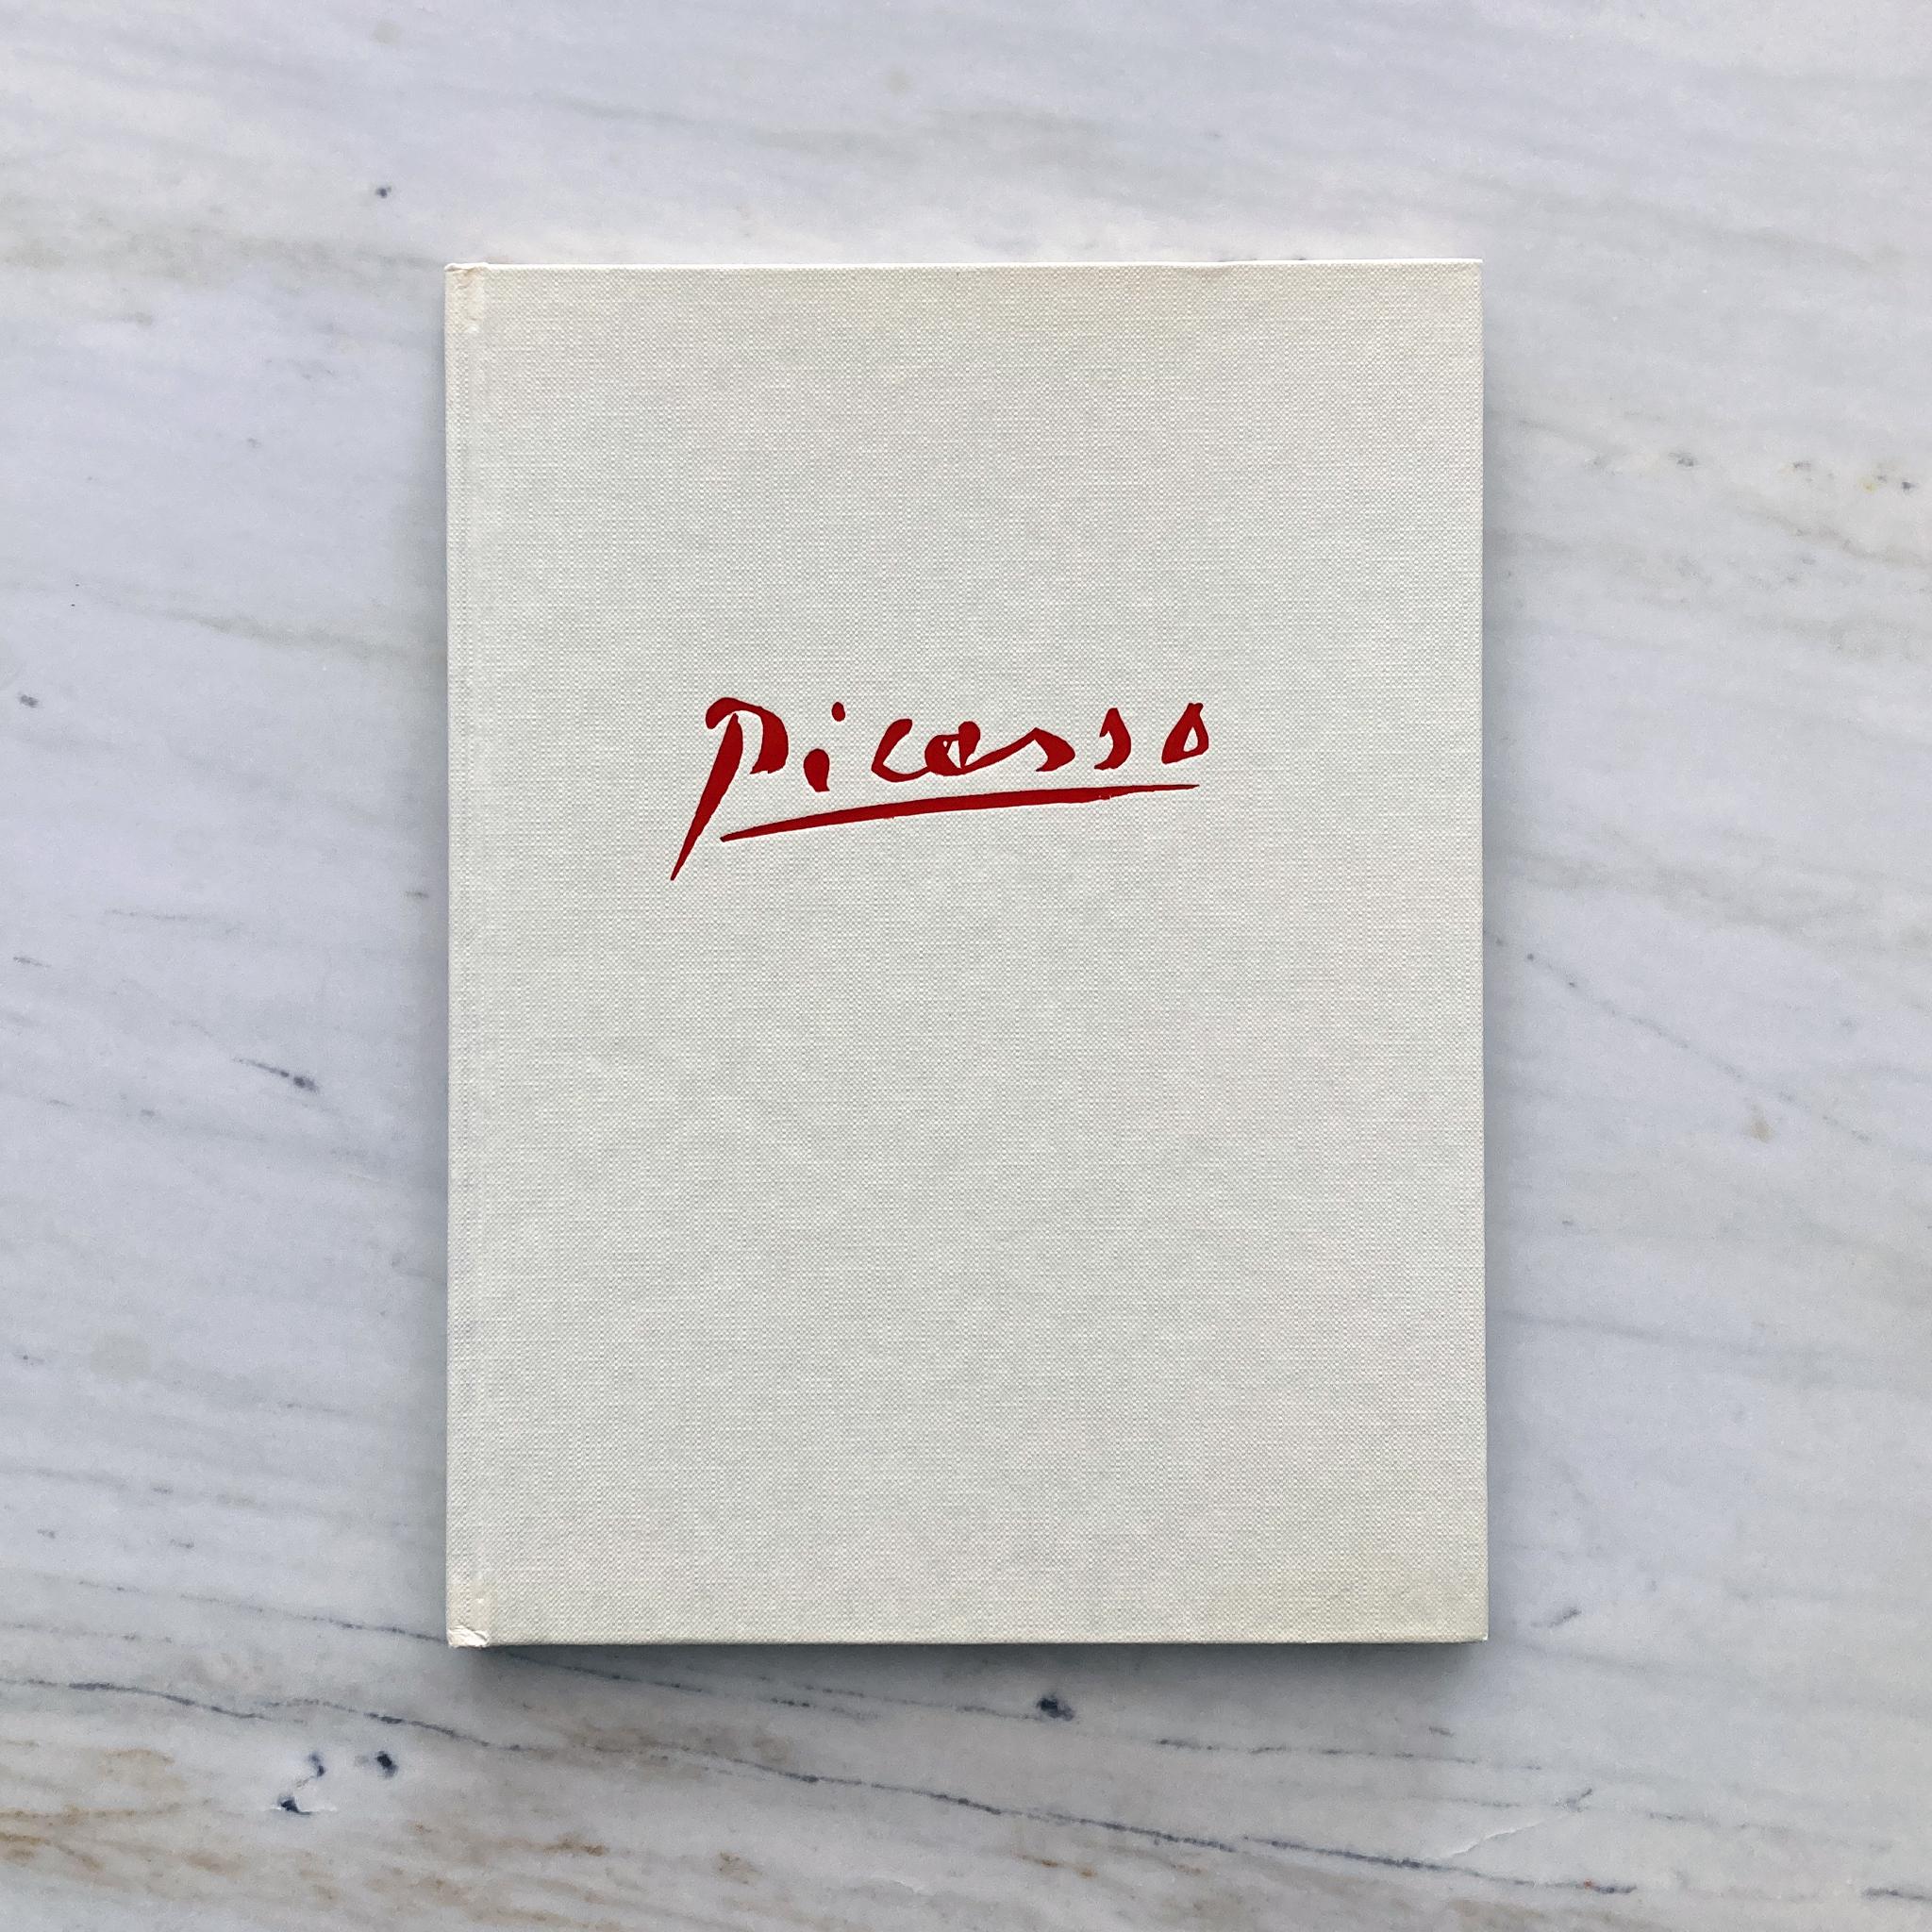 Picasso von Gaston Diehl, Bonfini Press 1977, gedruckt in Italien (amerikanisch) im Angebot